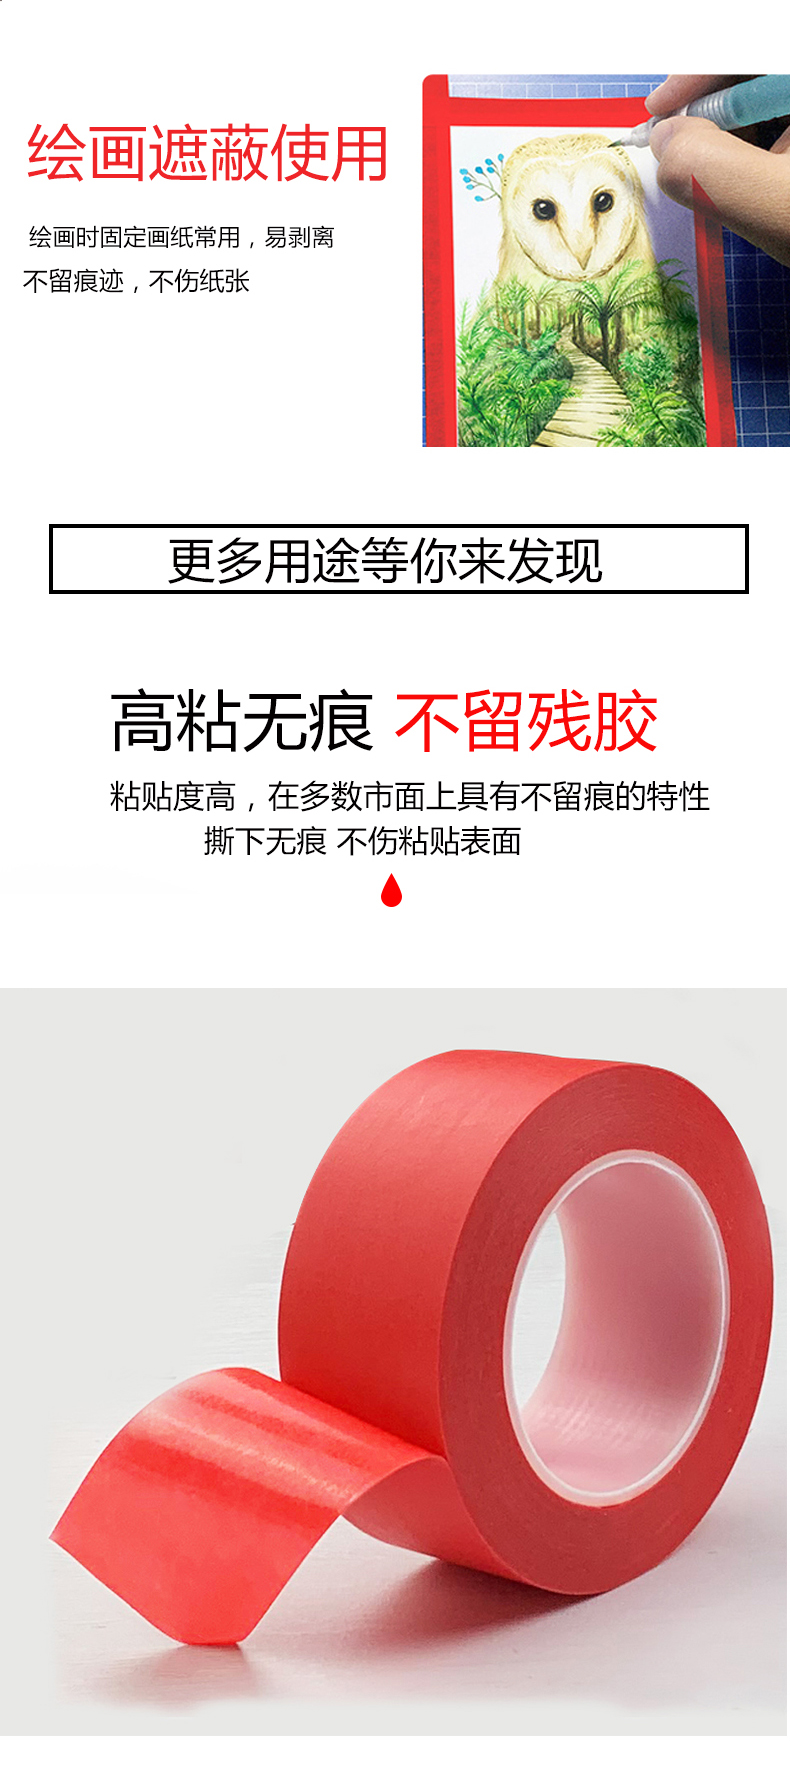 Băng keo PET composite màu đỏ có khả năng chịu nhiệt độ cao 280 độ Bảng mạch PCB hàn sơn phun sơn mặt nạ băng keo một mặt màu đỏ vô giá băng keo 2 mặt nhỏ